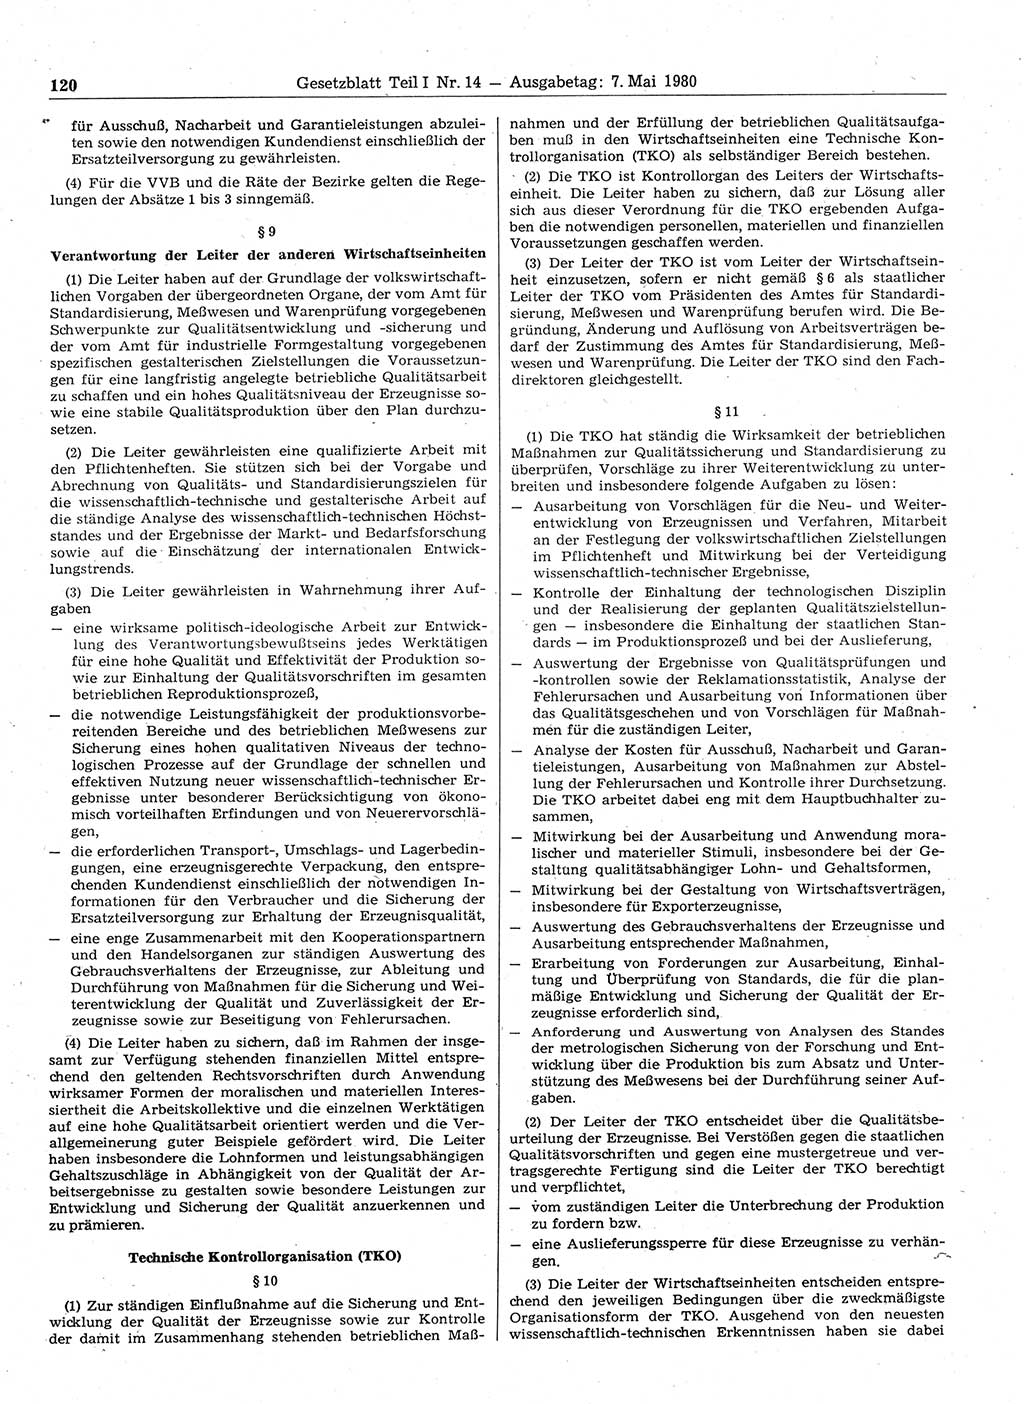 Gesetzblatt (GBl.) der Deutschen Demokratischen Republik (DDR) Teil Ⅰ 1980, Seite 120 (GBl. DDR Ⅰ 1980, S. 120)